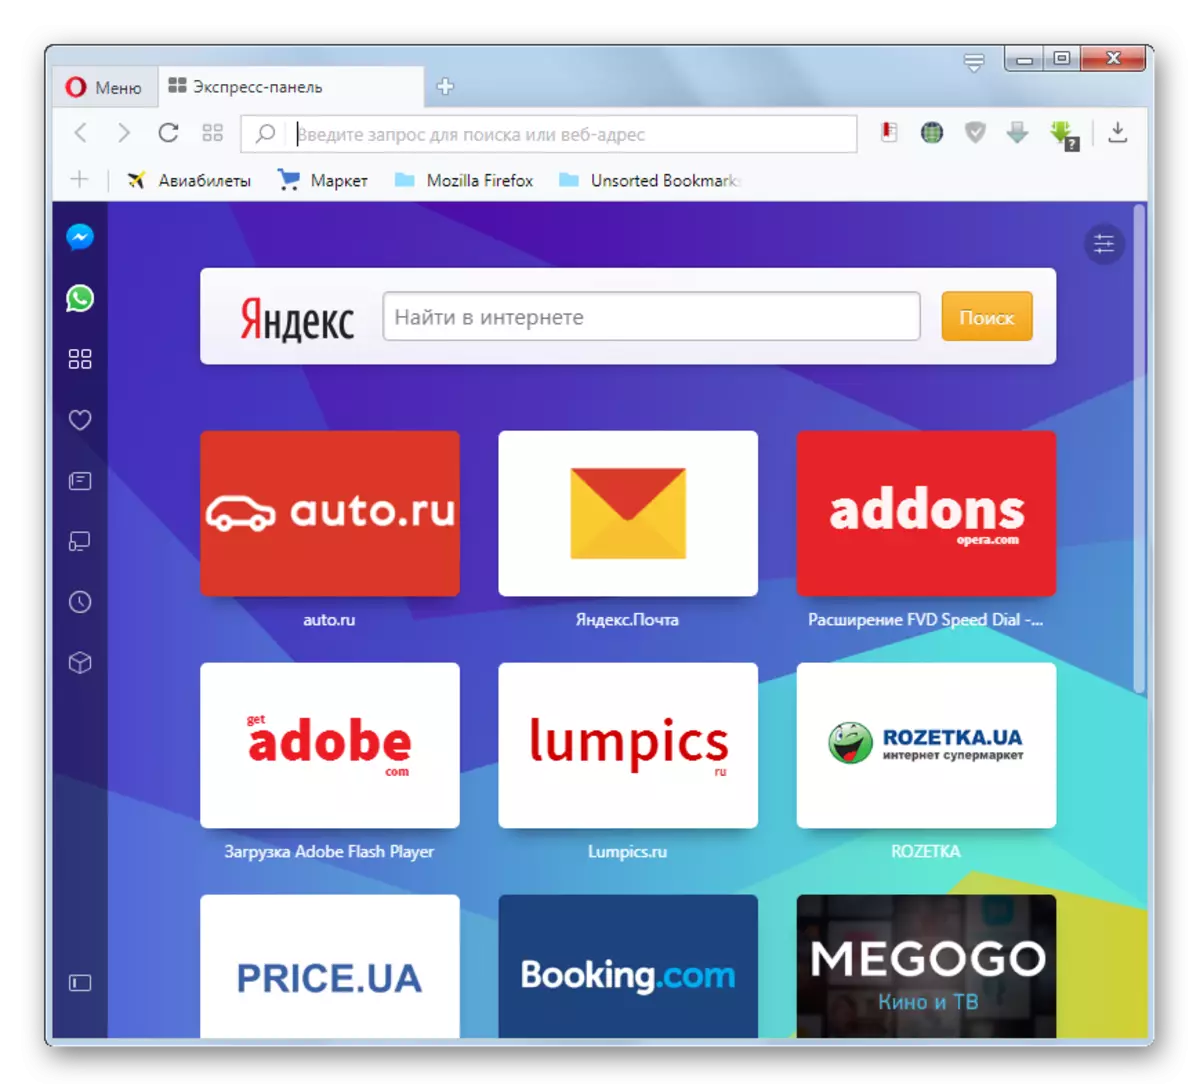 Opera-browser wordt gelanceerd